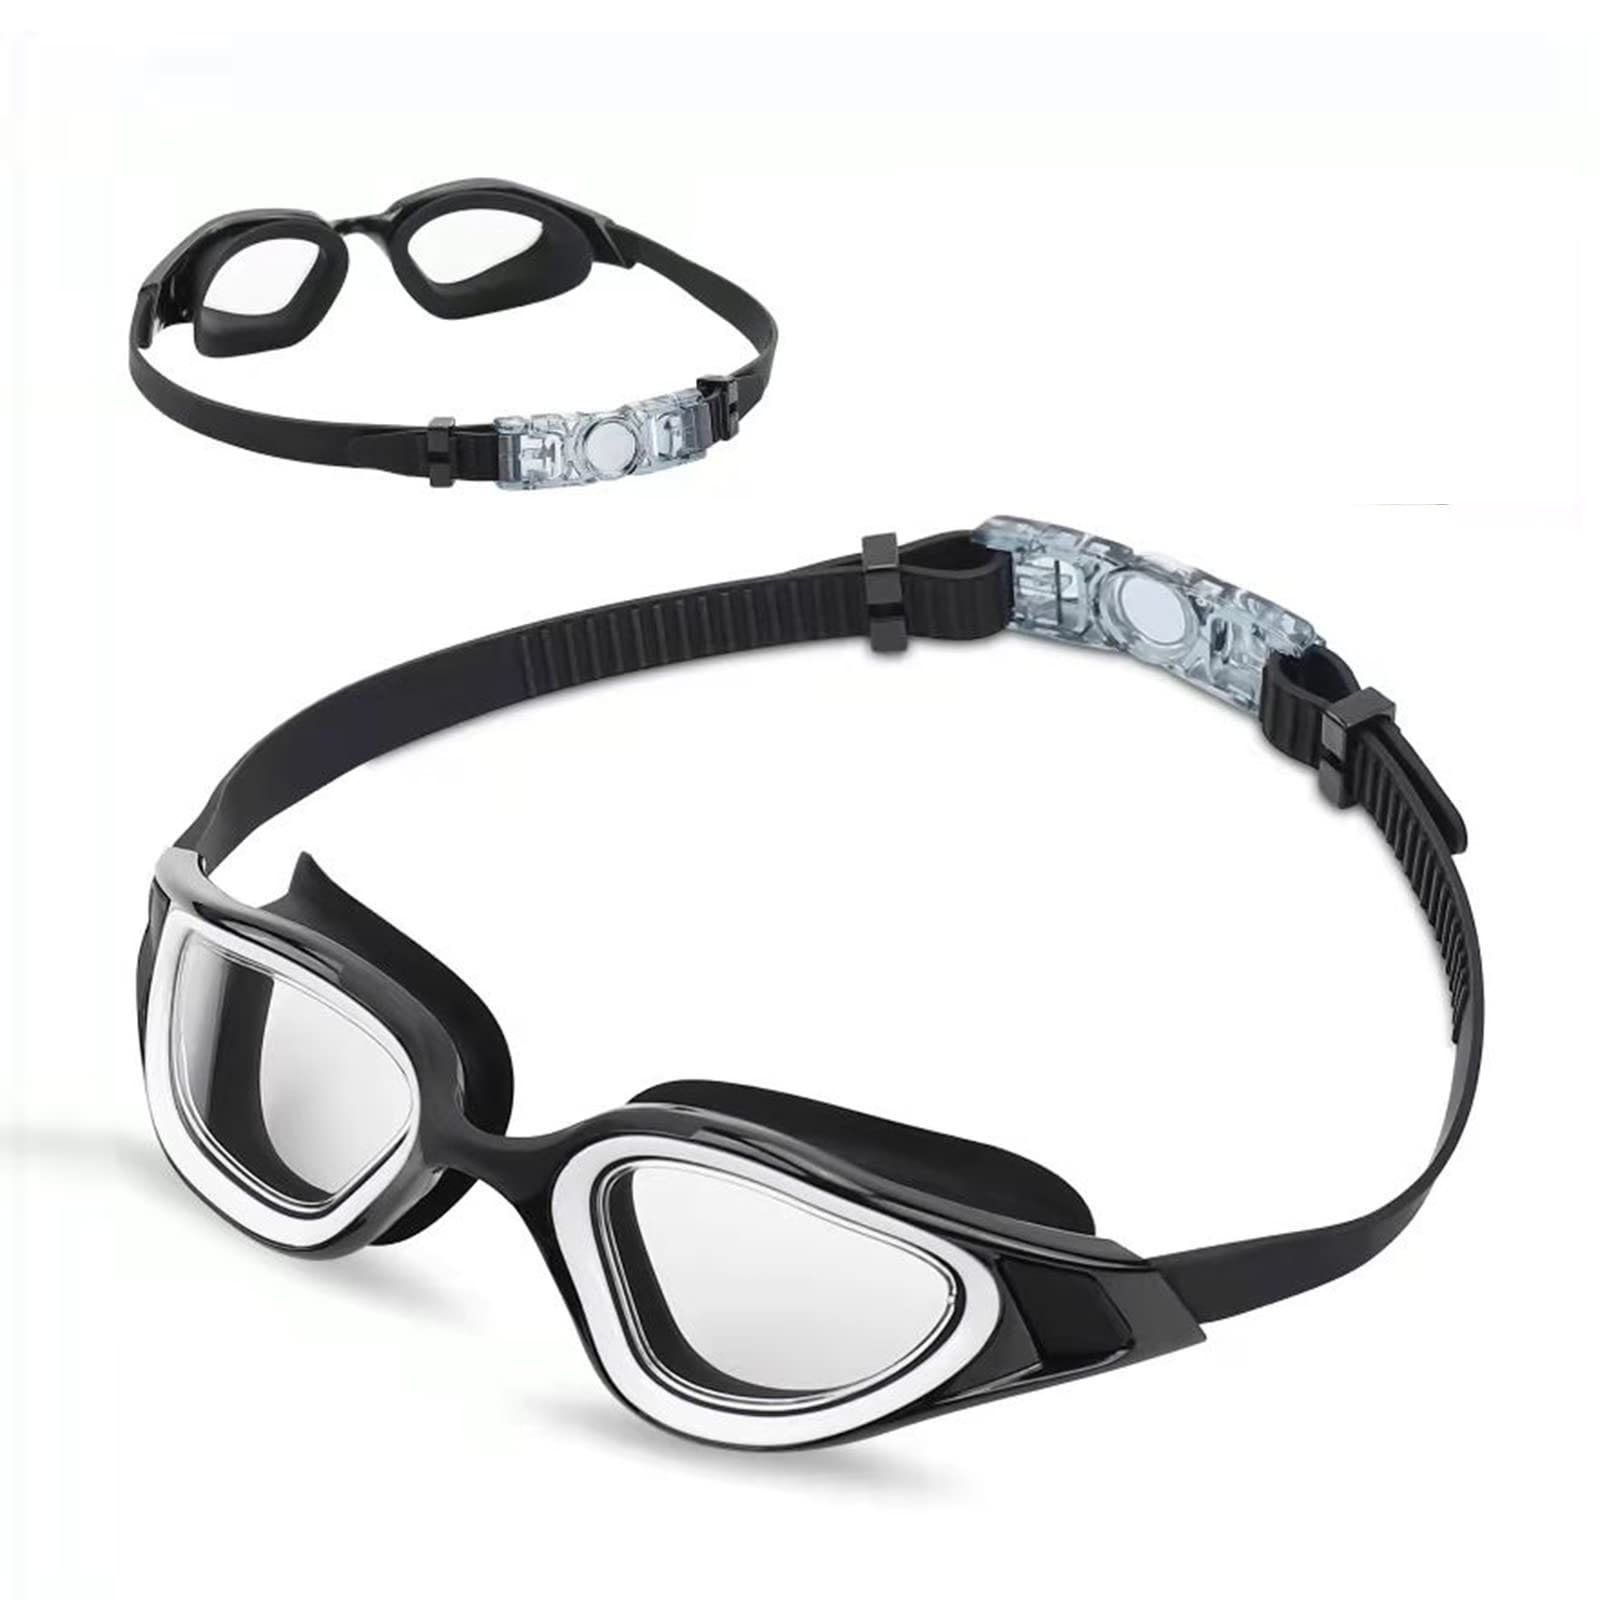 Profi Schwimmbrille UV-Schutz Taucherbrille Anti-Fog Antibeschlag Mit Ohrstöpsel 